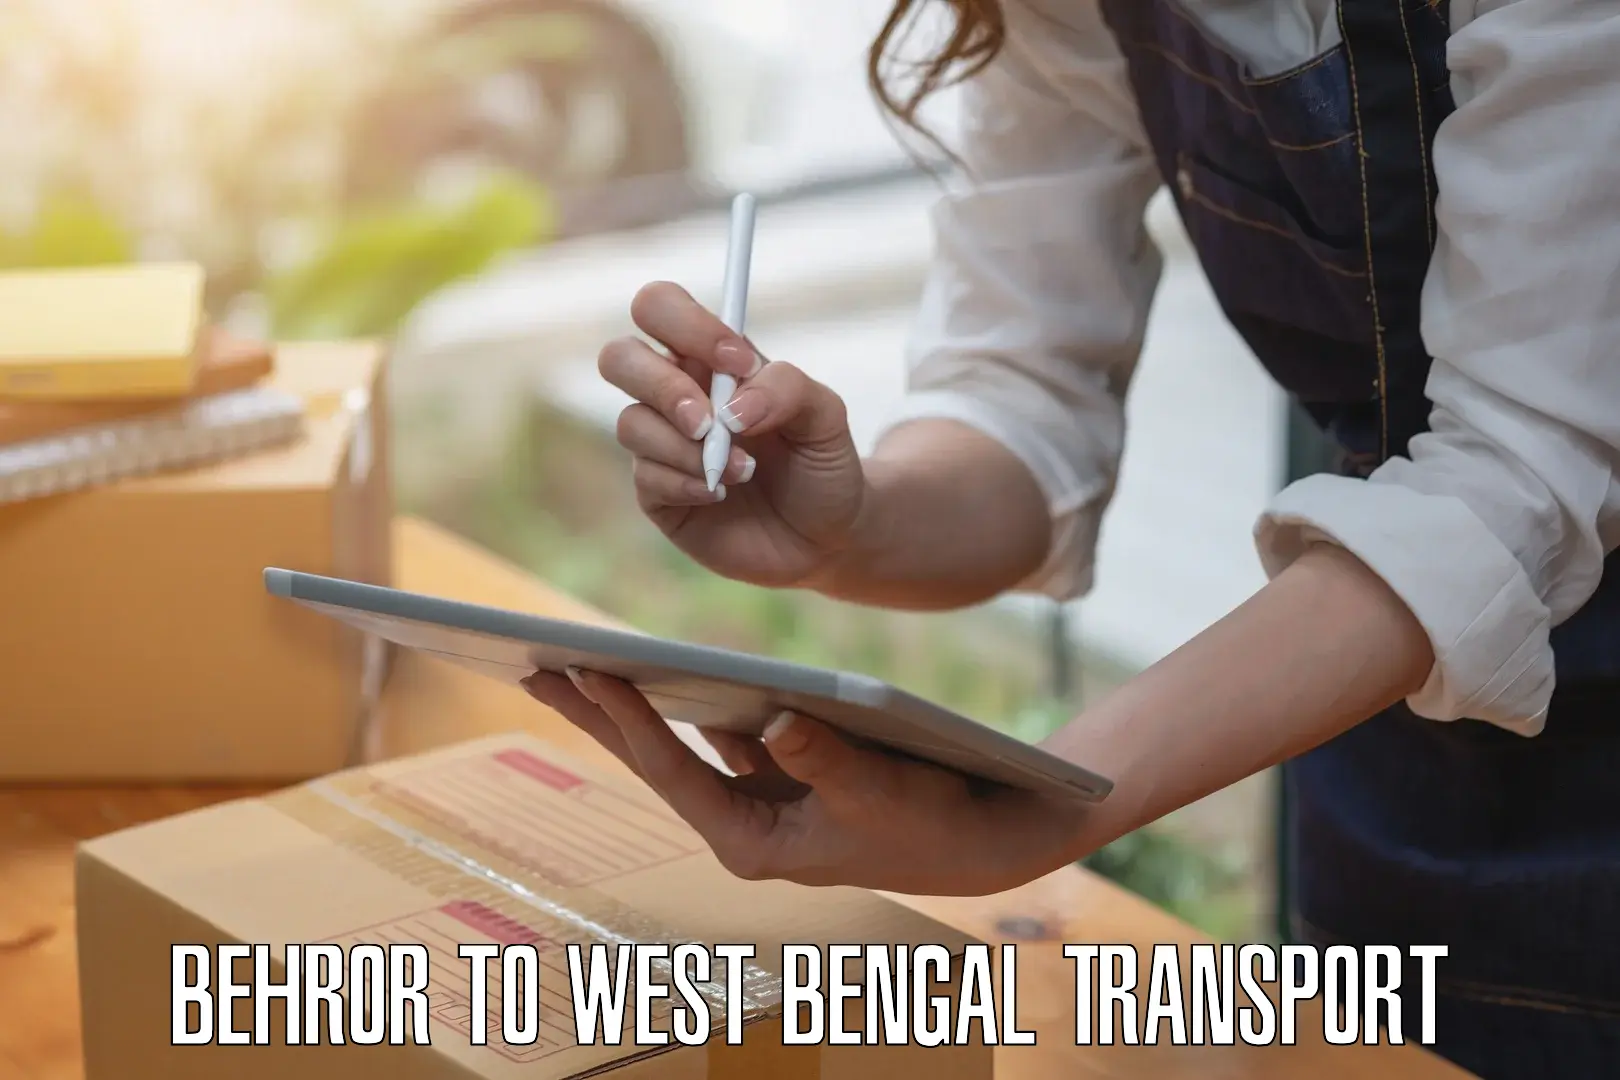 Two wheeler transport services Behror to Kolkata